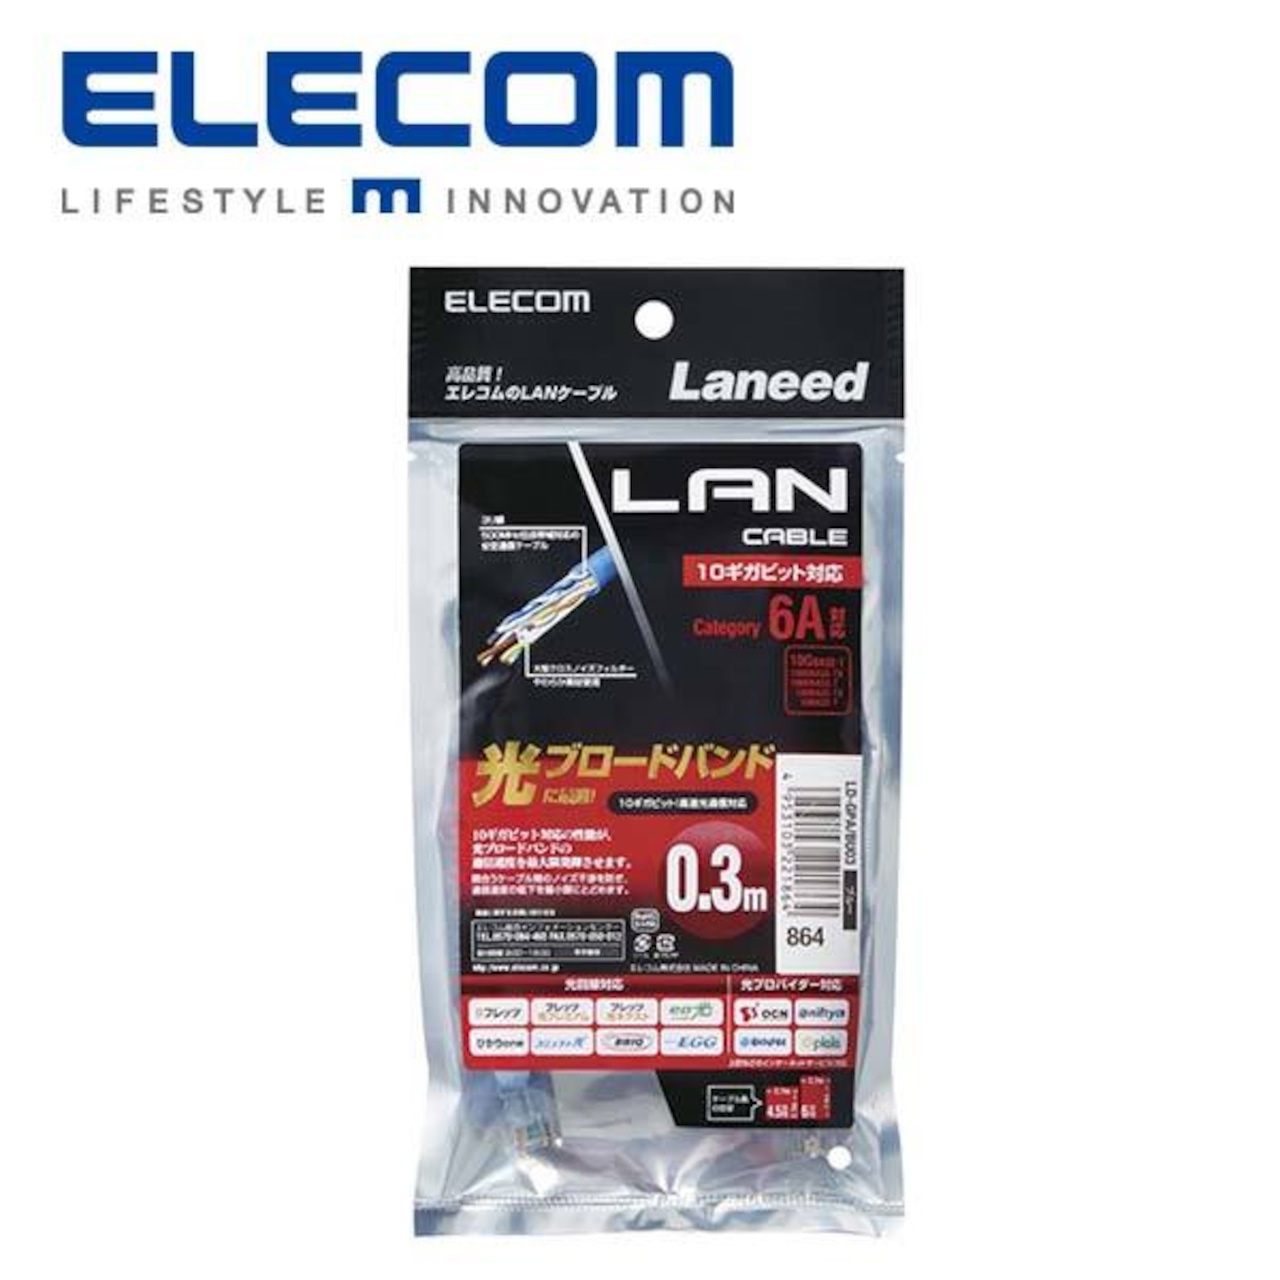 エレコム(ELECOM) LD-GPABUシリーズ カテゴリー6A対応LANケーブル (LD-GPA/BU03)